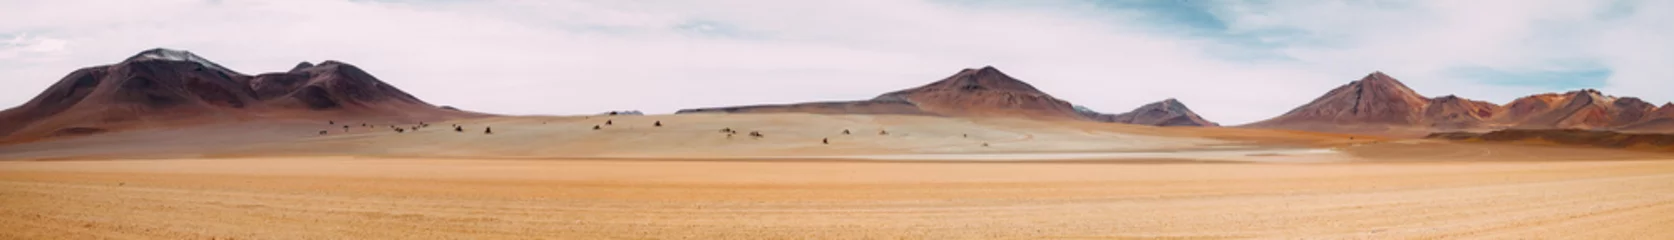  De enorme uitgestrektheid van het niets - Atacama-woestijn - Bolivia © jakedow